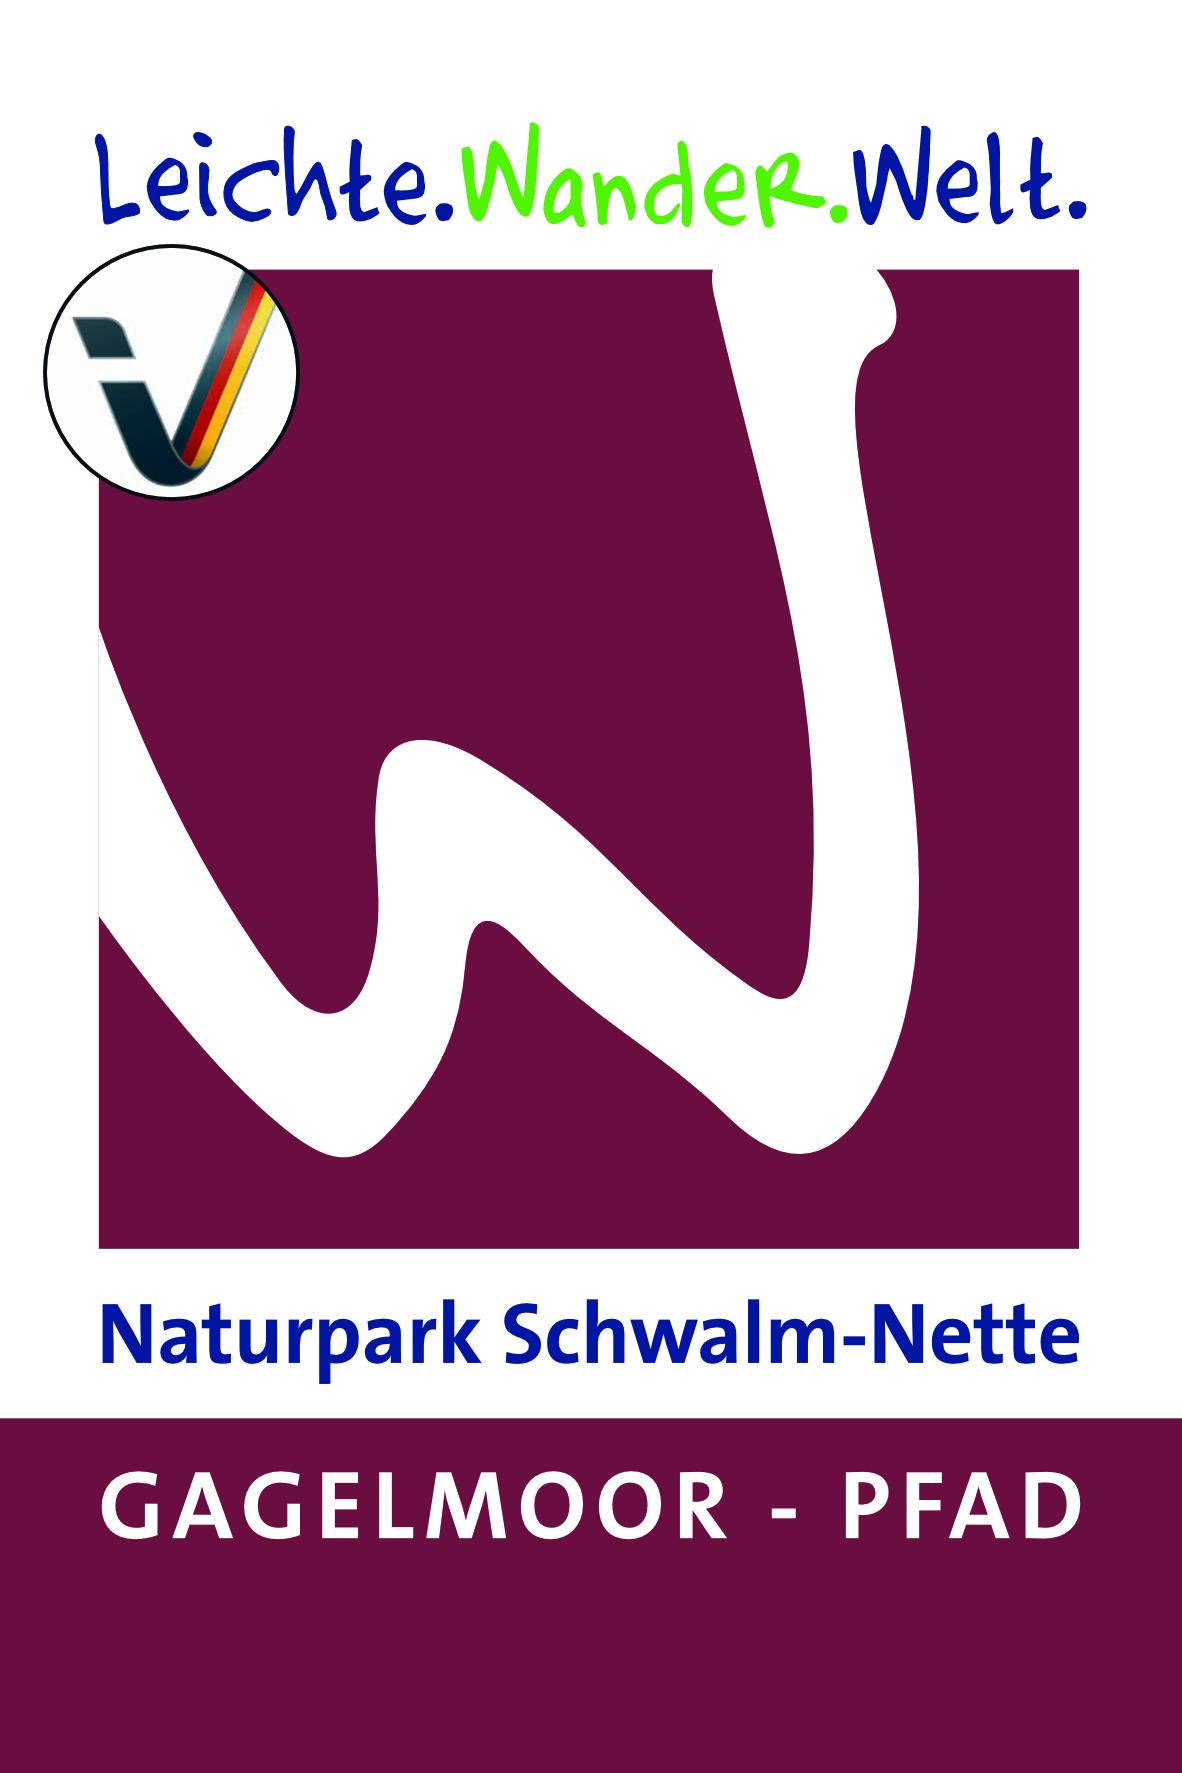 Naturpark Schwalm-Nette · Gagelmoor - Pfad - ©Guido Bonewitz